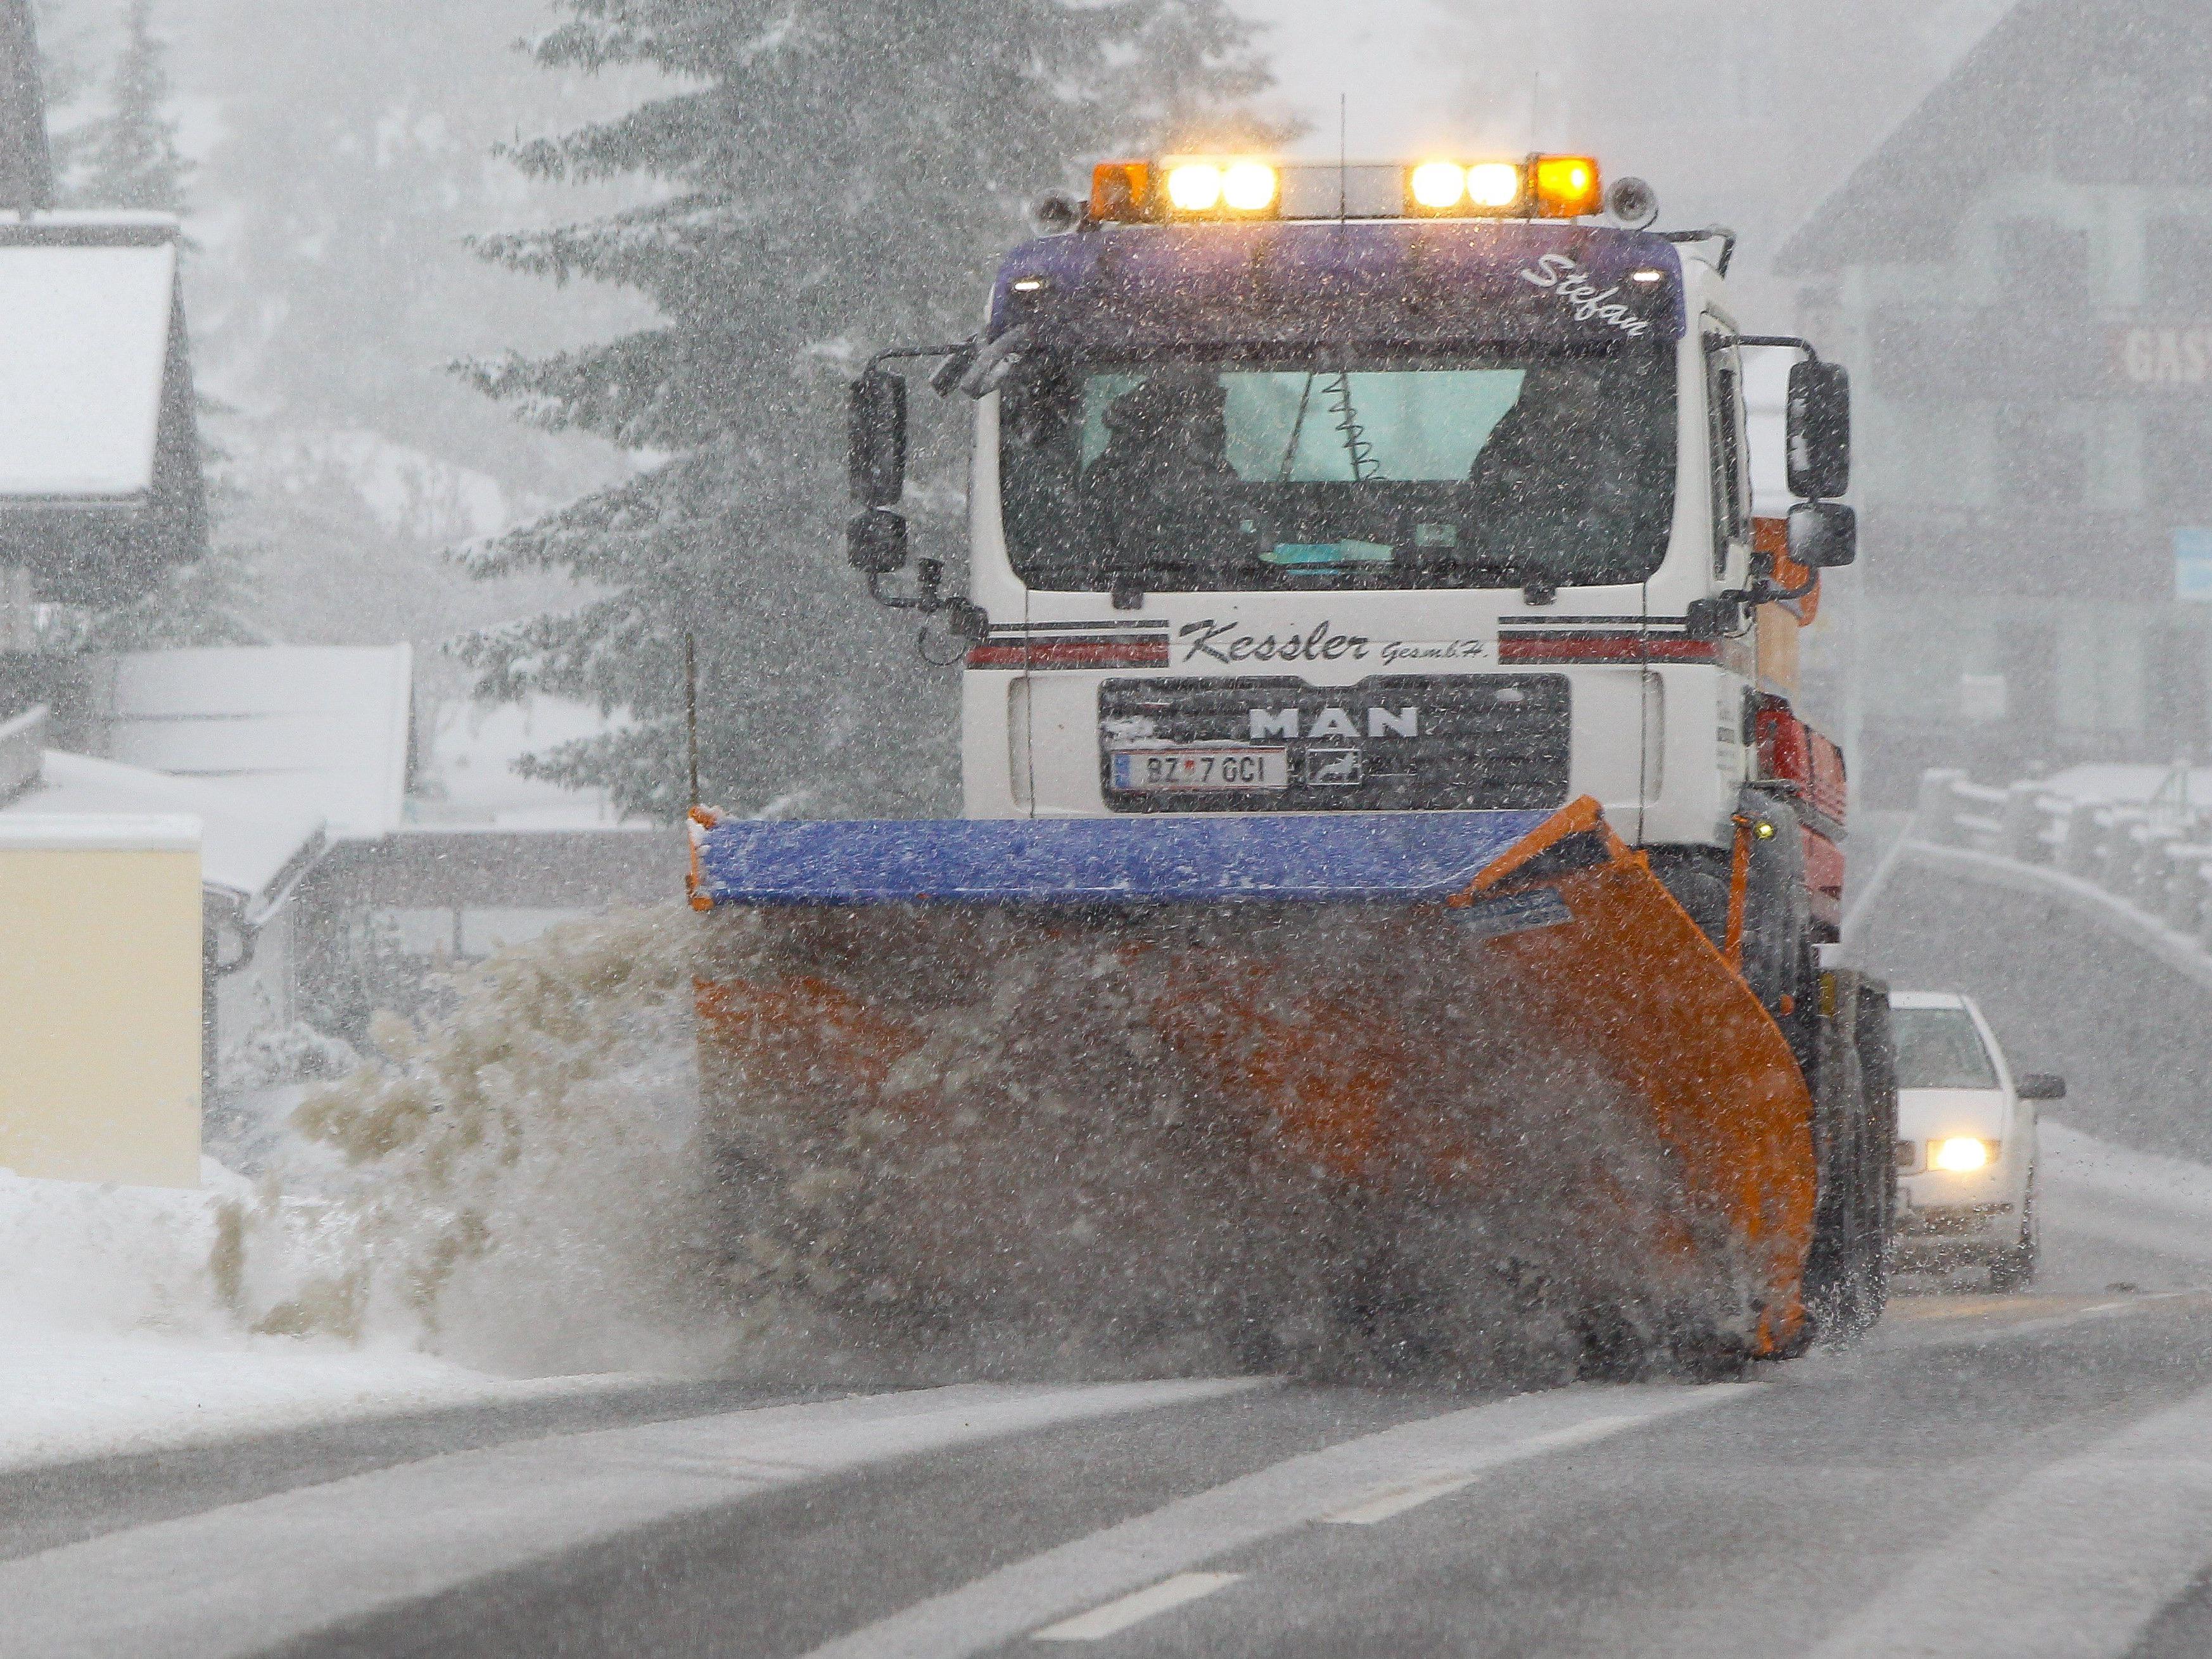 Schnee sorgt für schwierige Fahrbahnverhältnisse.